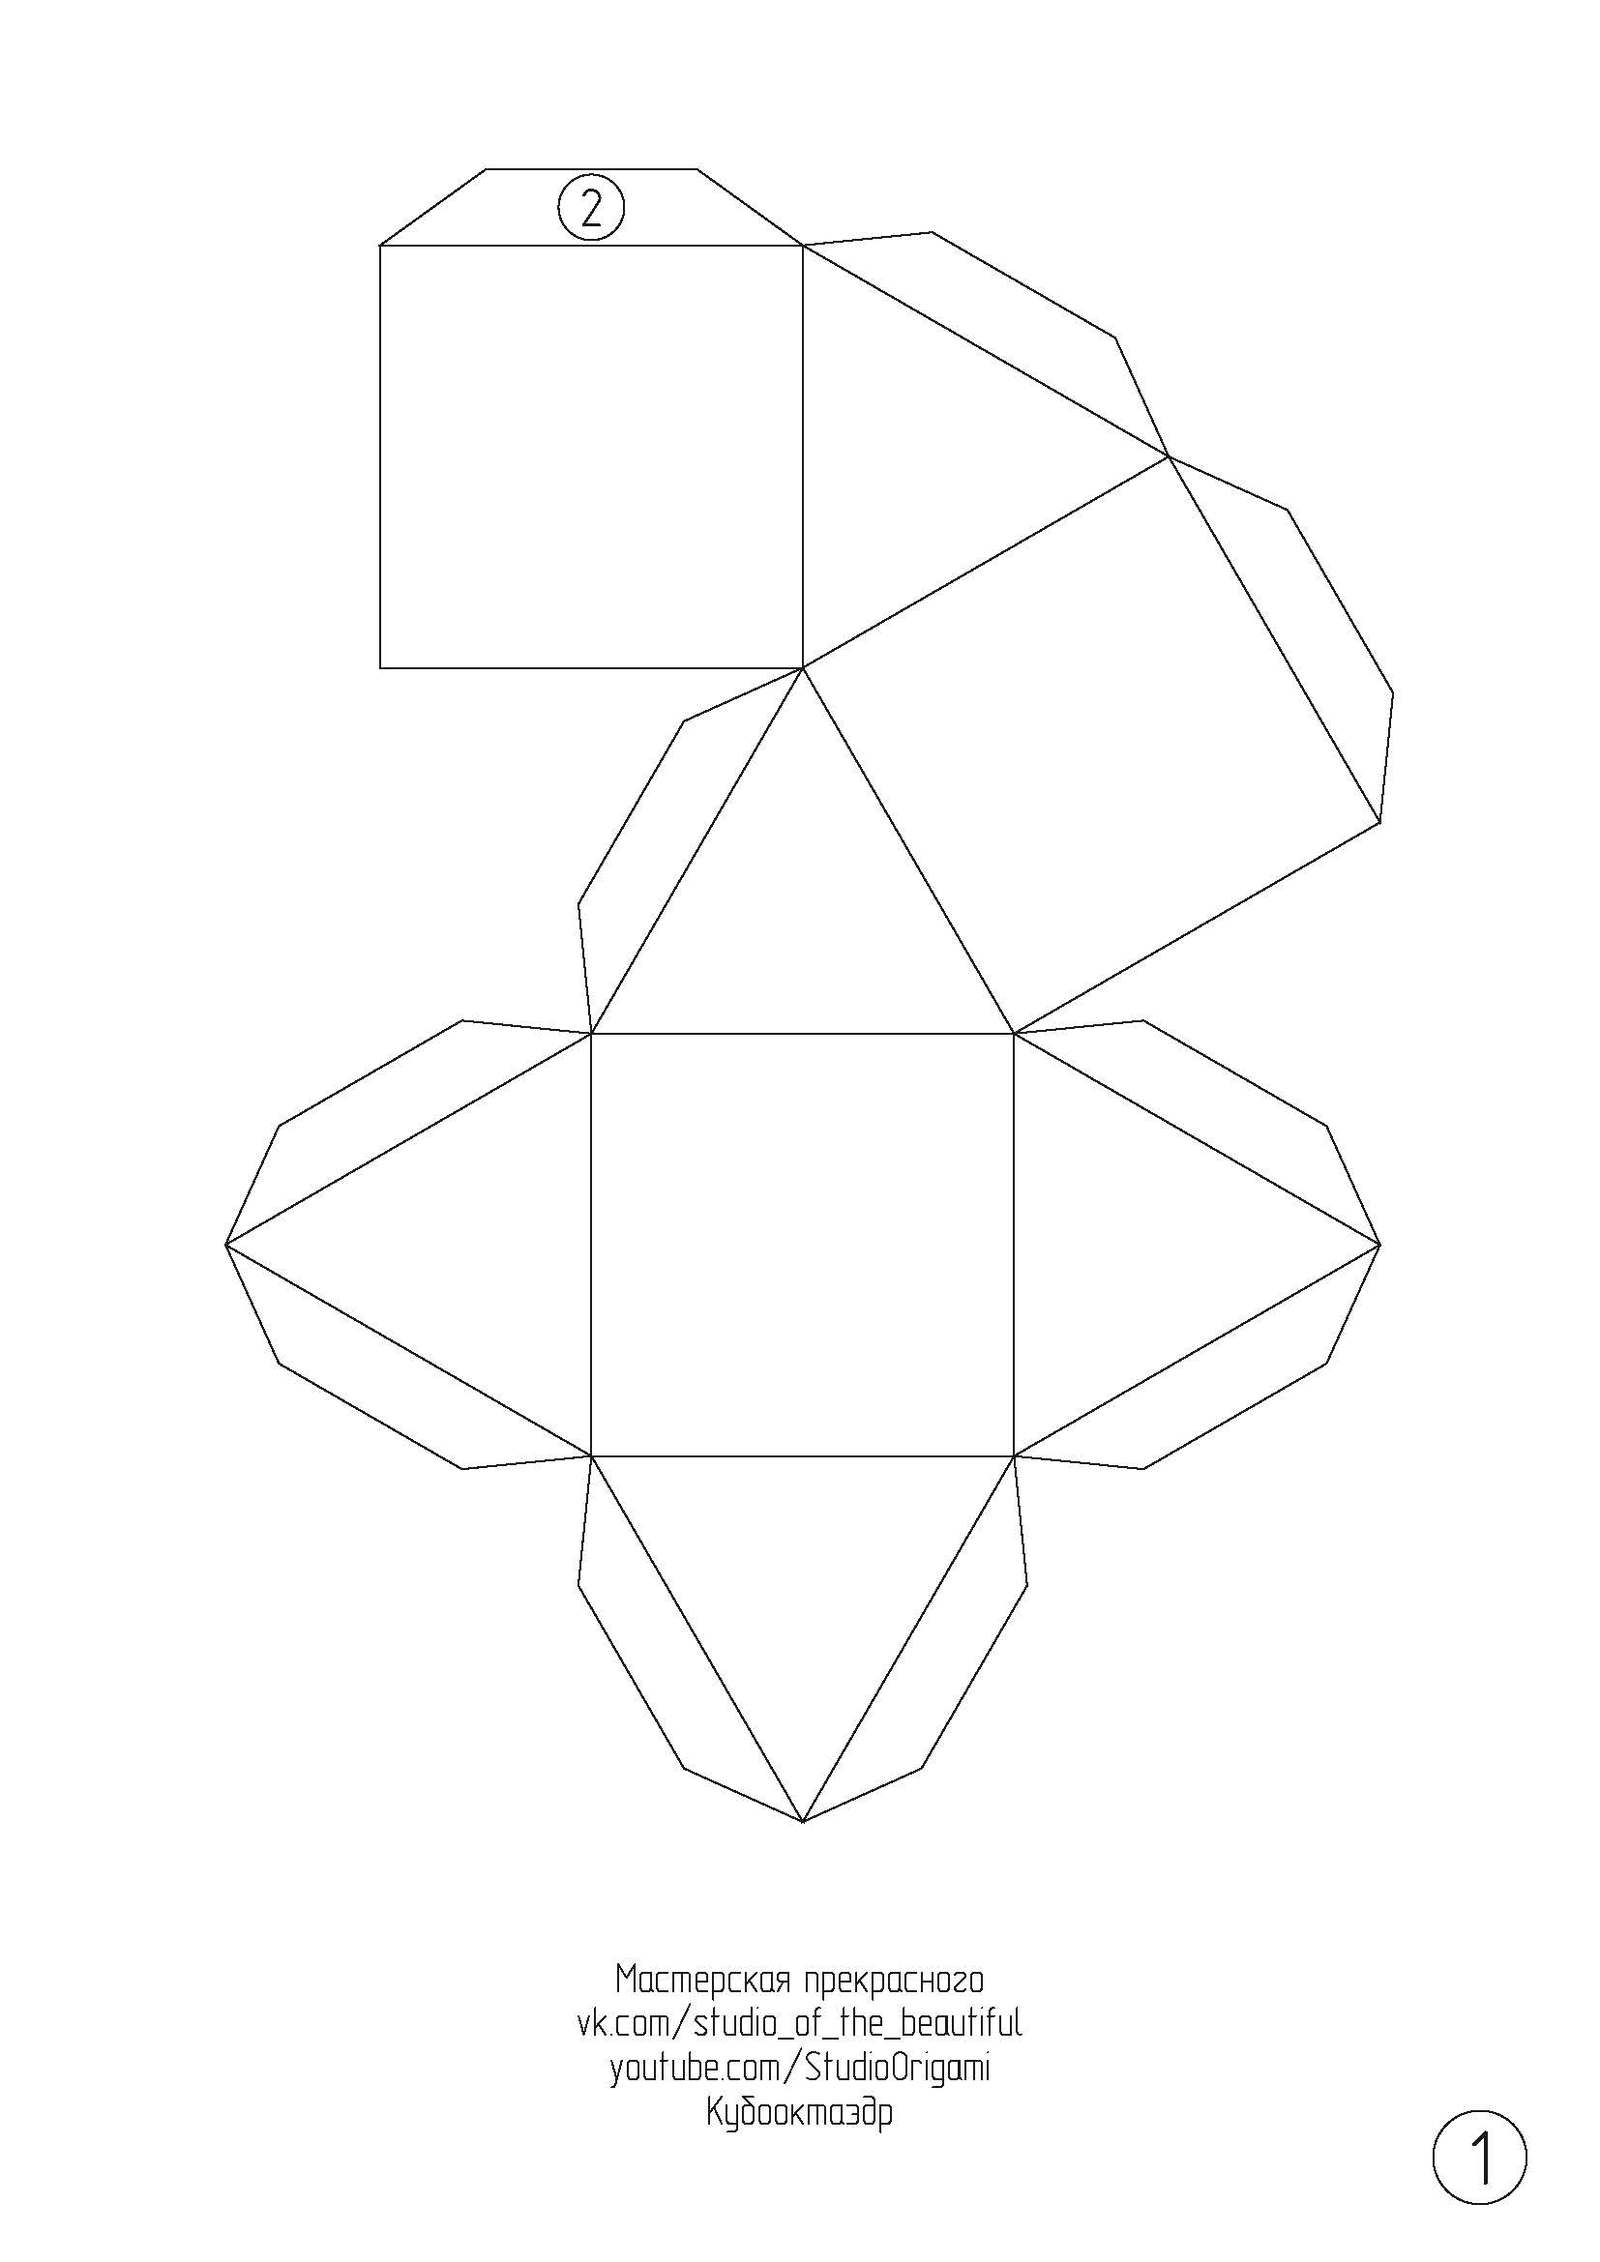 Модульный оригами кубик из бумаги • Простое оригами без клея своими руками • Origami Cube DIY